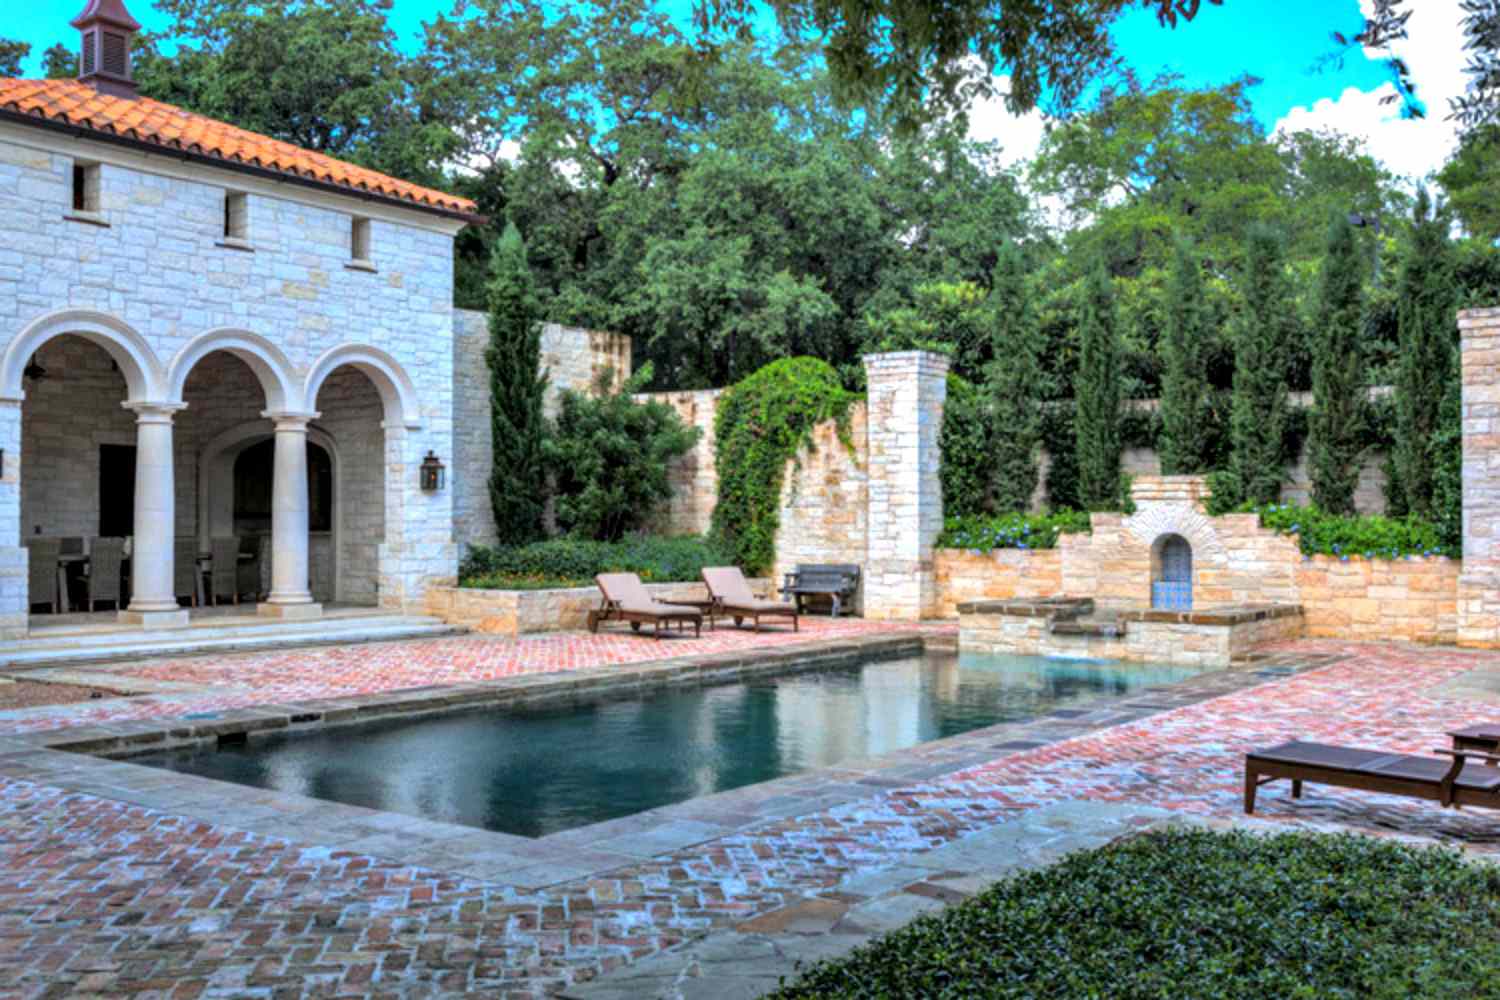 Mediterrane Pool-Designs mit Steinstegen, Säulenveranda und Liegestühlen.